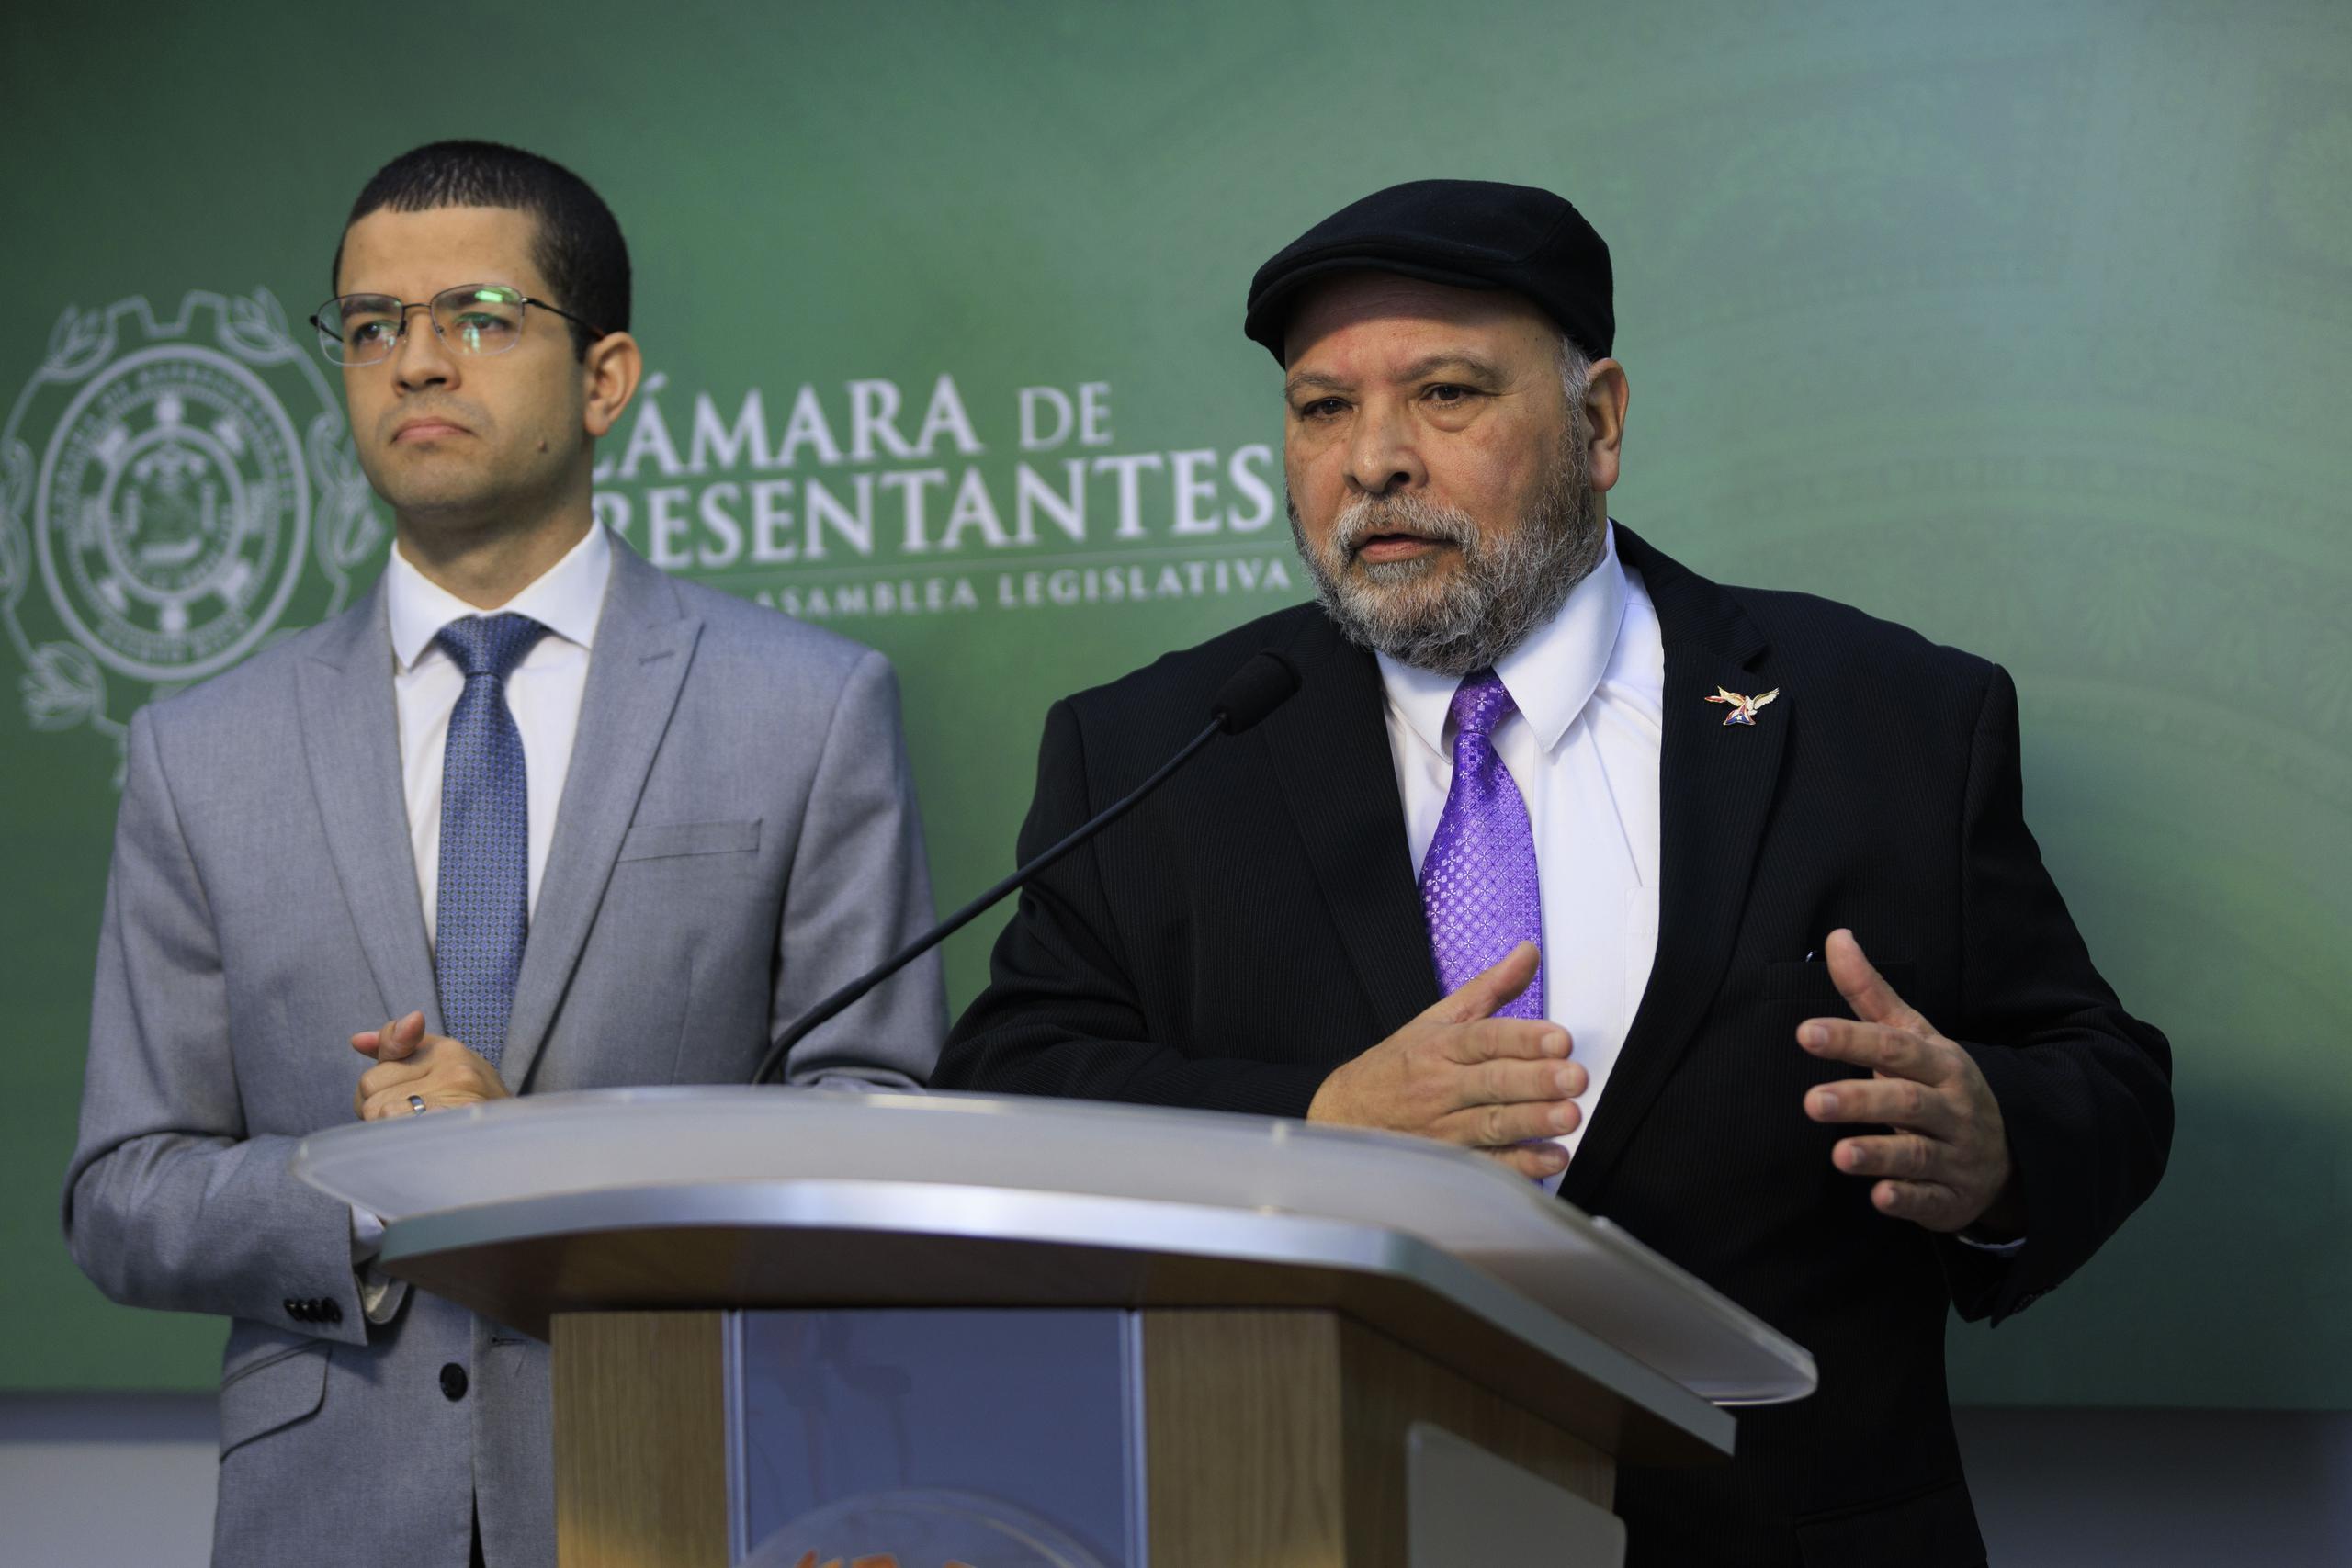 Los representantes José Bernardo Márquez y Luis Raúl Torres Cruz durante la conferencia de prensa.